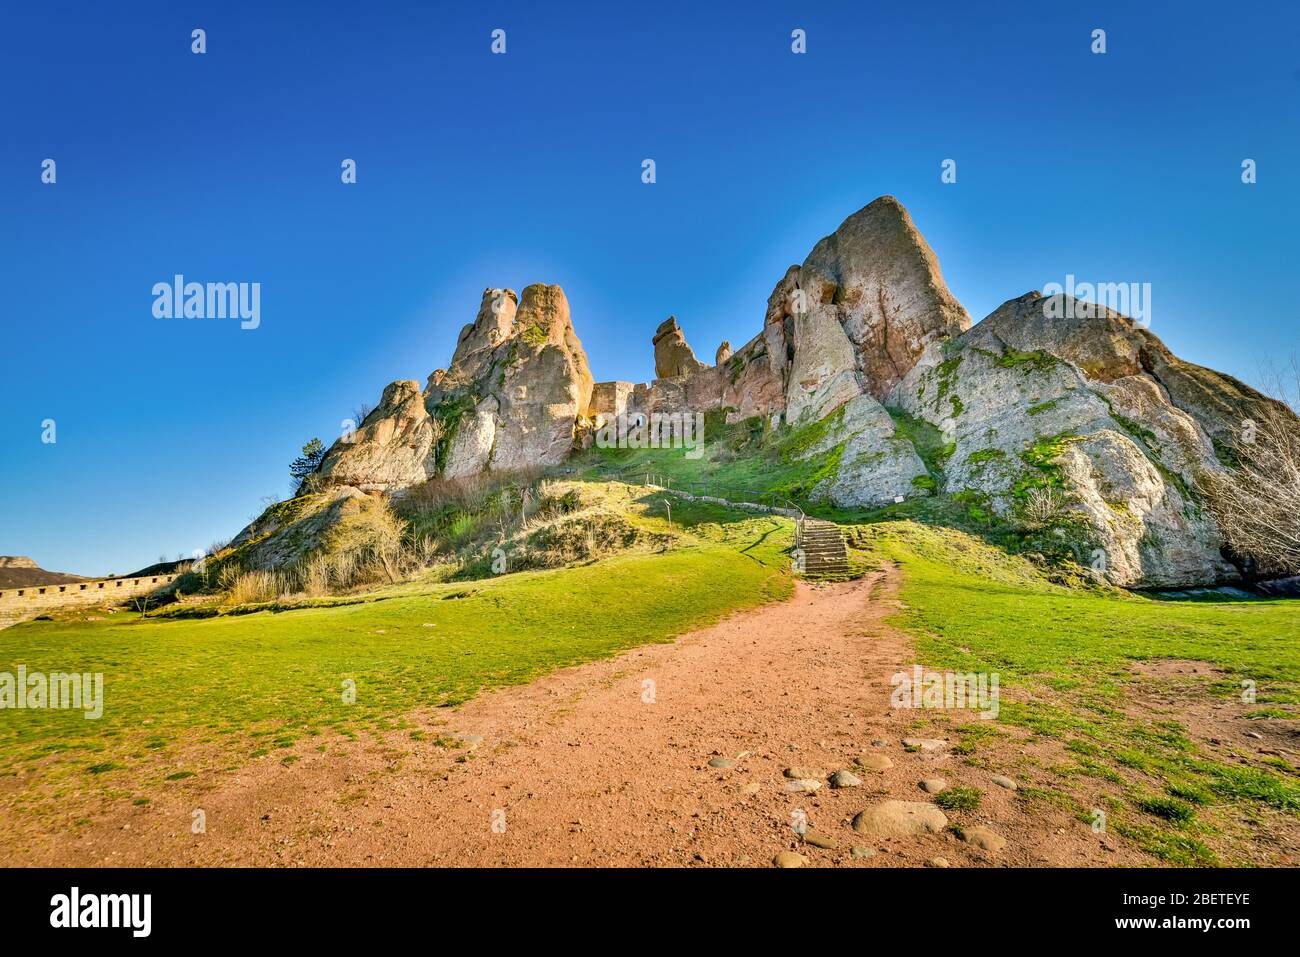 Vue panoramique sur l'incroyable château romain naturellement formé par des roches de grès dans la ville historique de Belogradchik, dans le nord-ouest de la Bulgarie Banque D'Images